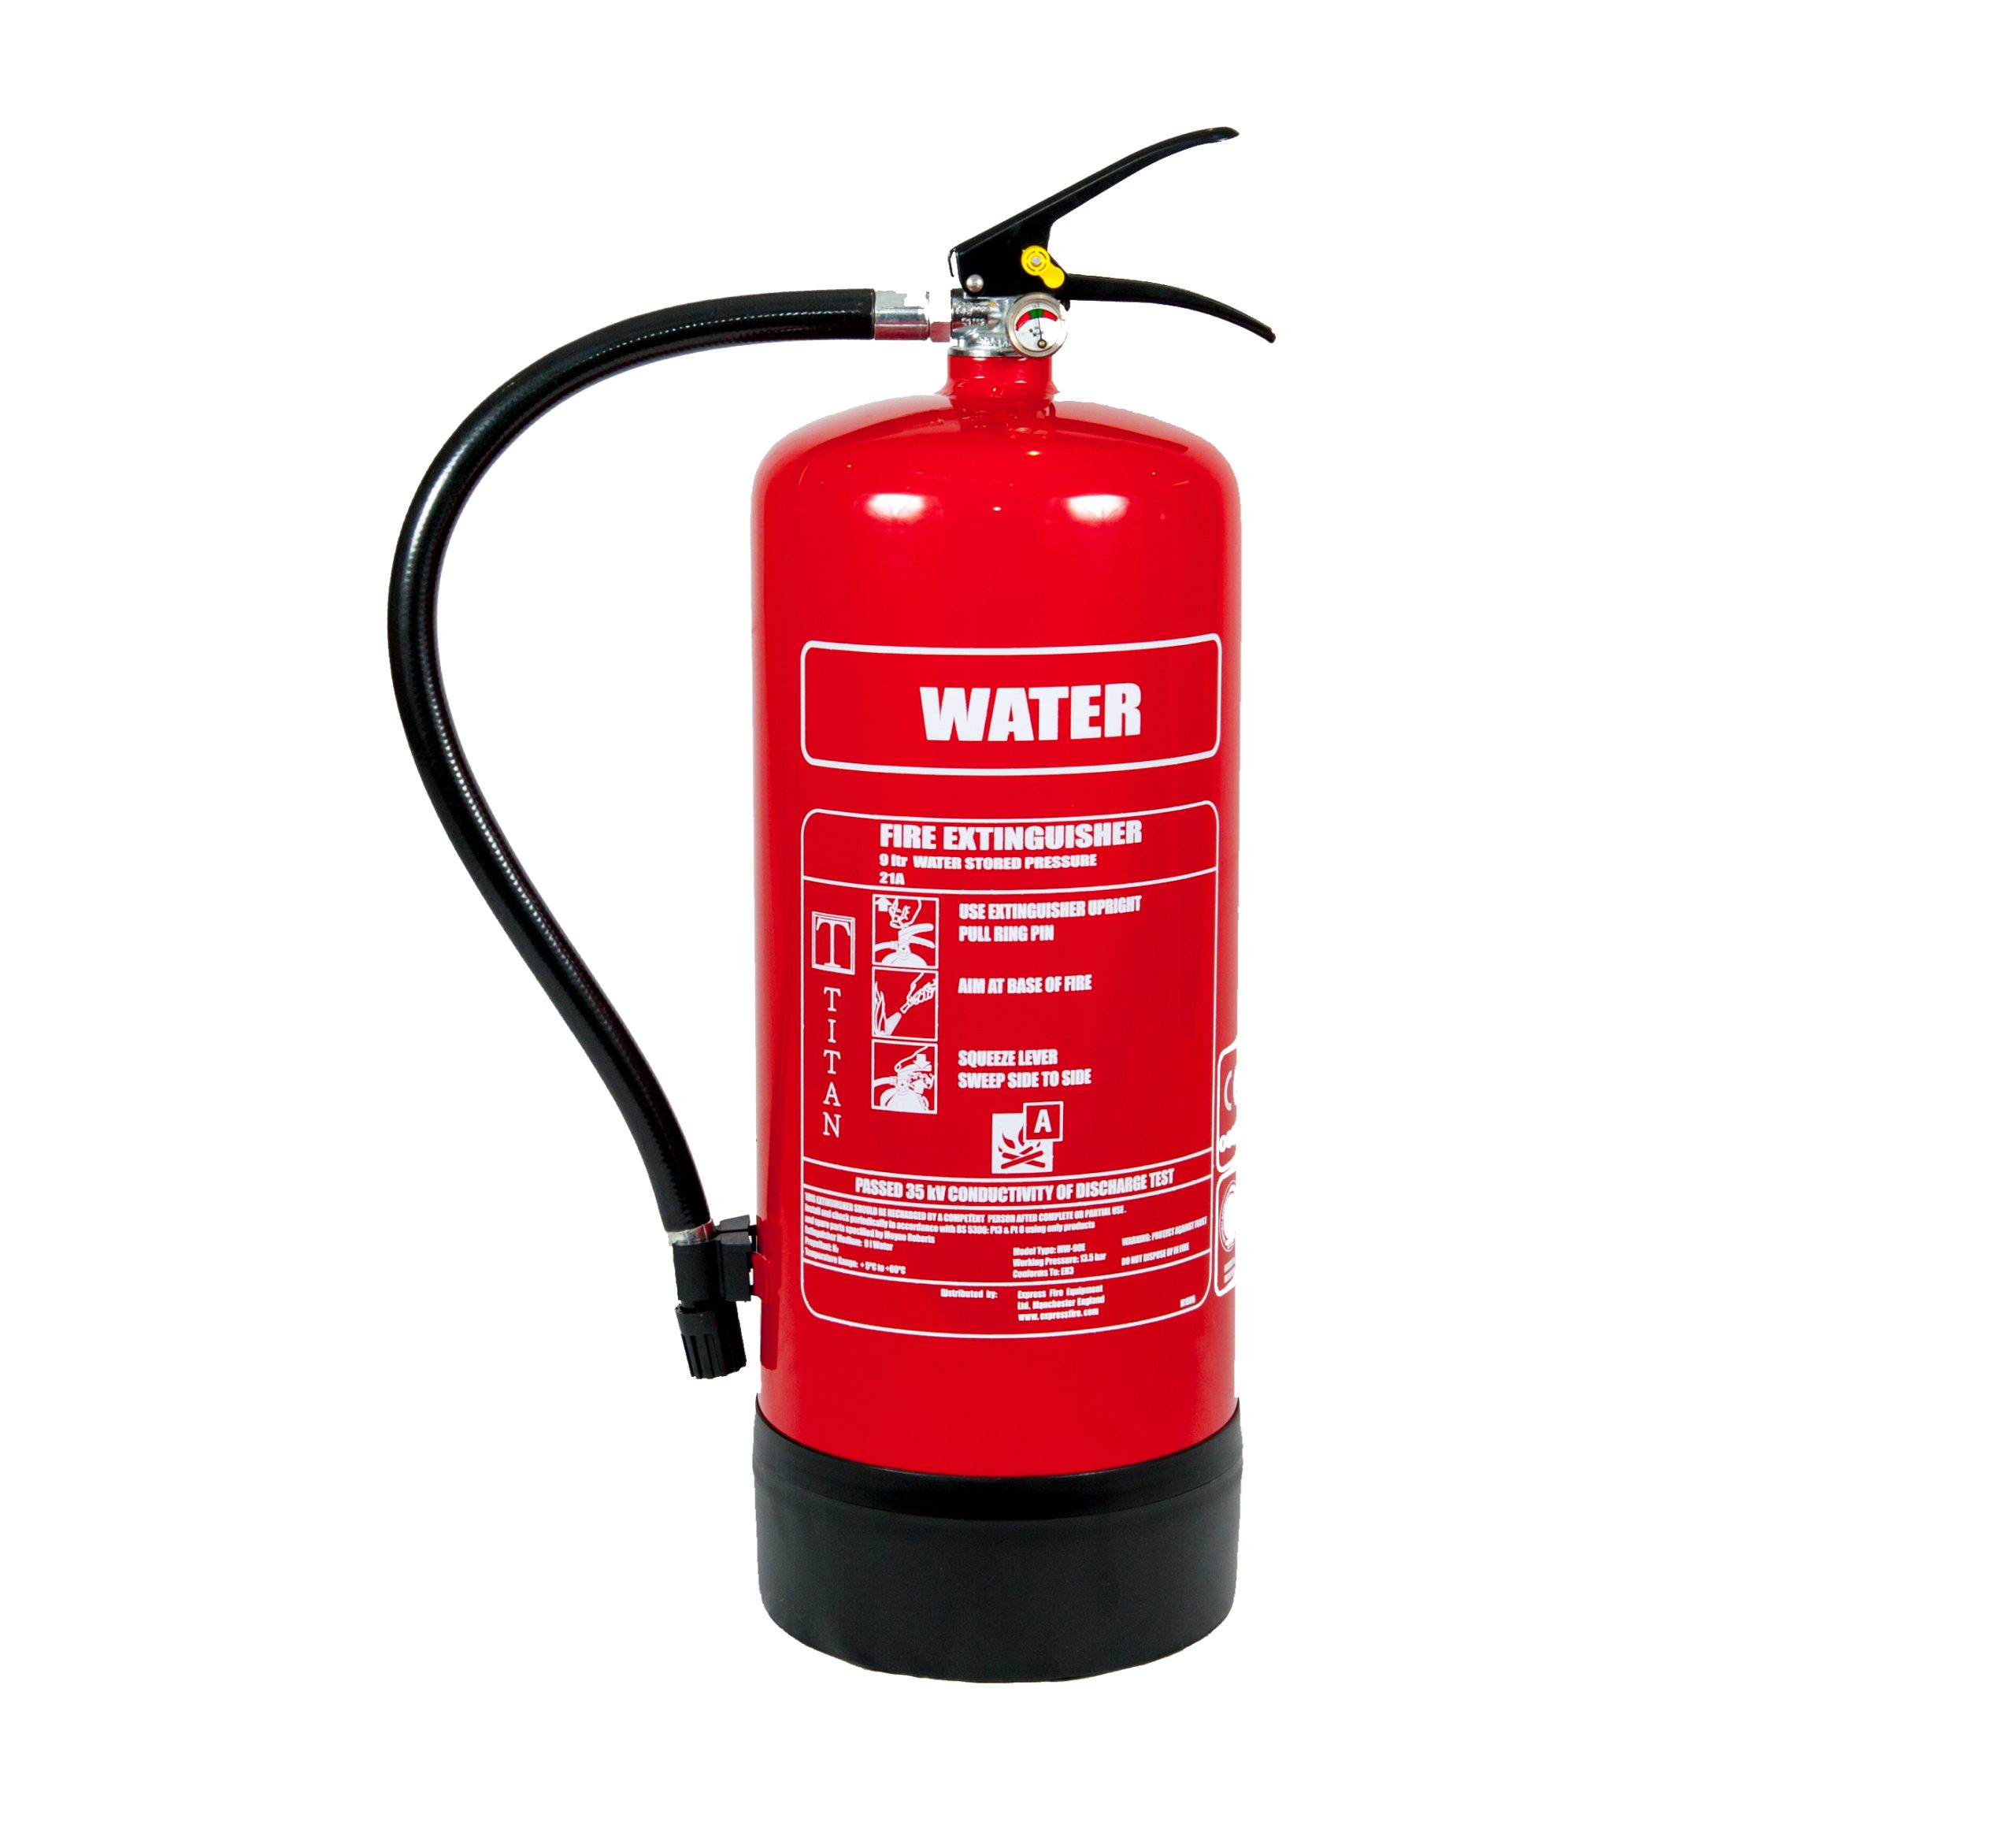 TITAN Kitemarked 9ltr Water Fire Extinguisher